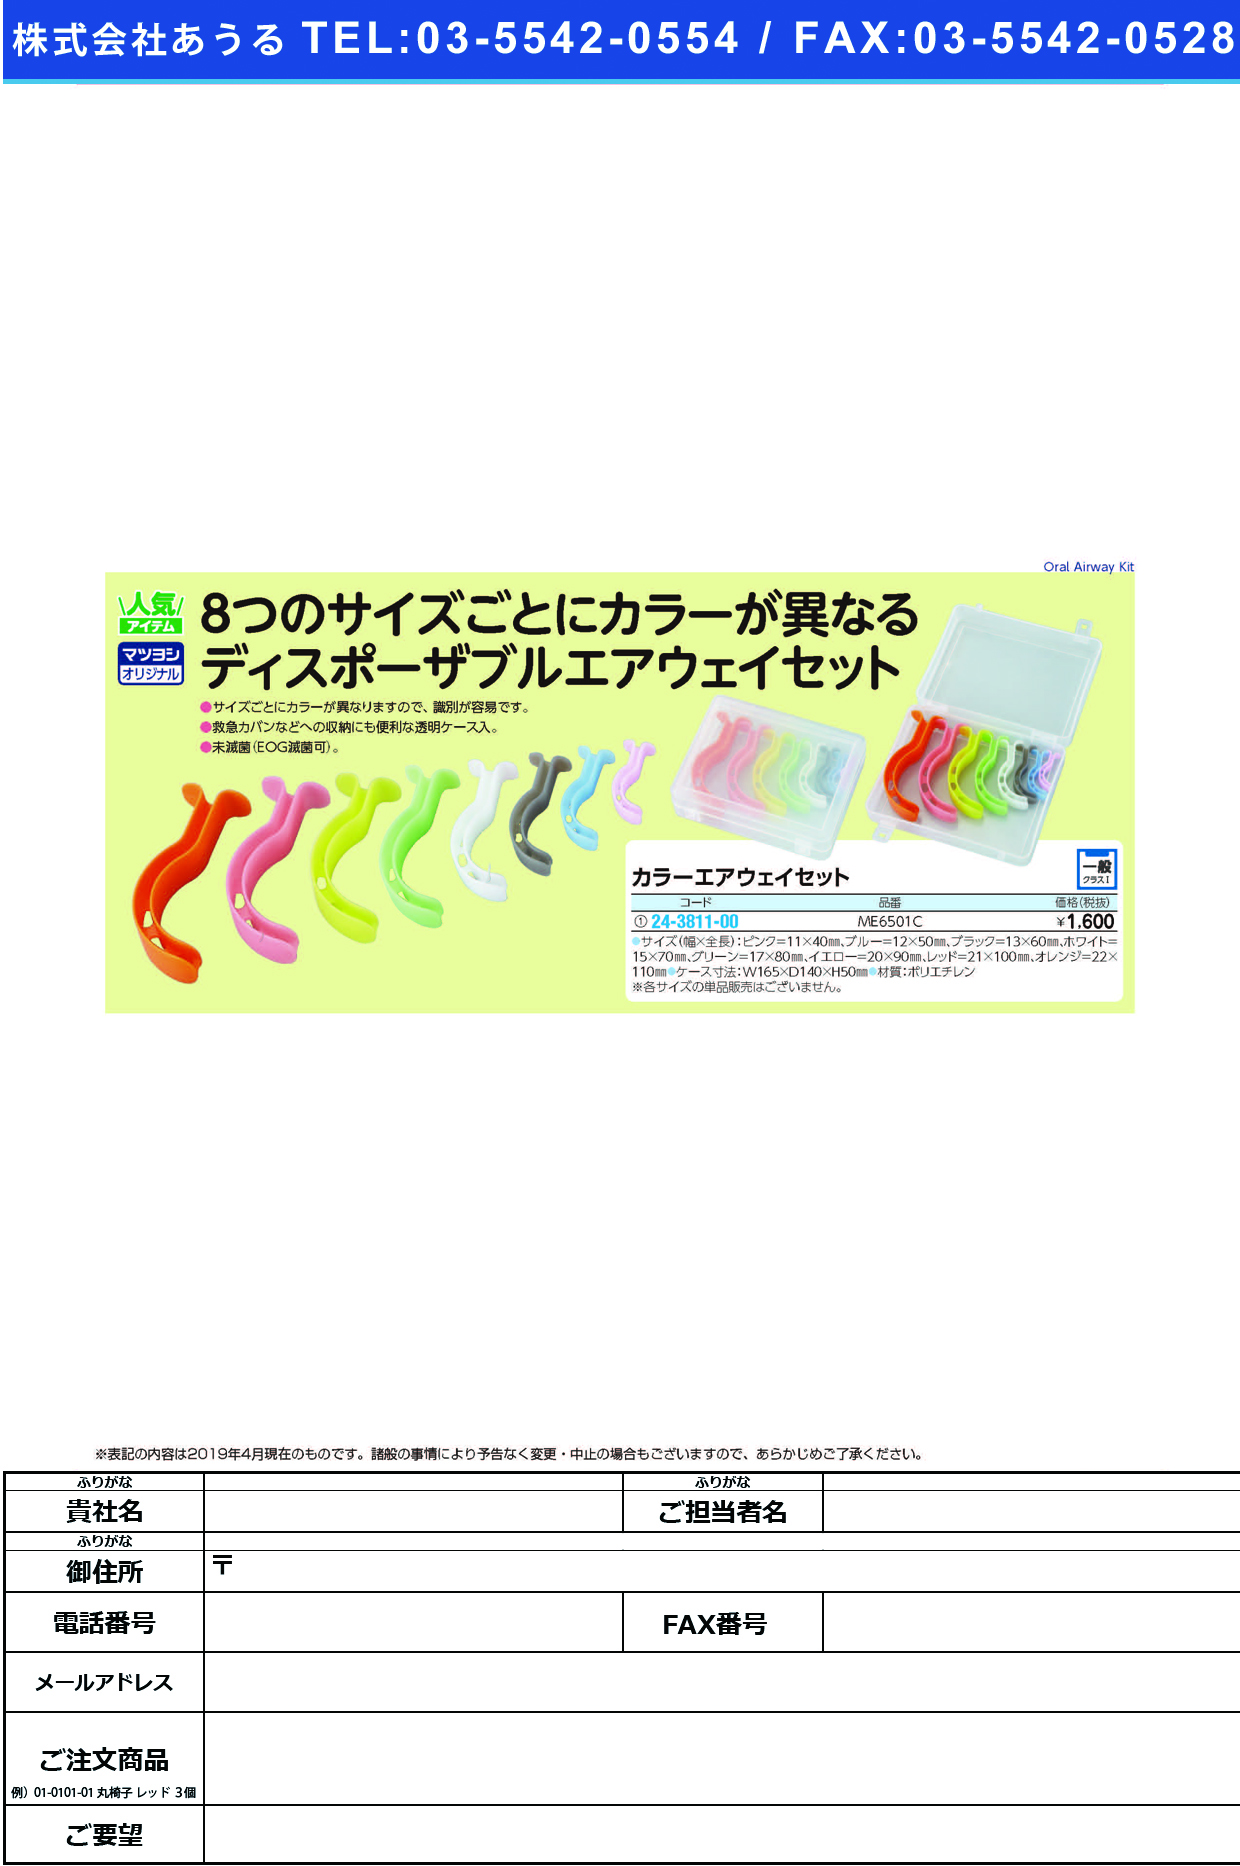 (24-3811-00)カラーエアウェイセット ME6501C ｶﾗｰｴｱｳｪｲｾｯﾄ【1組単位】【2019年カタログ商品】